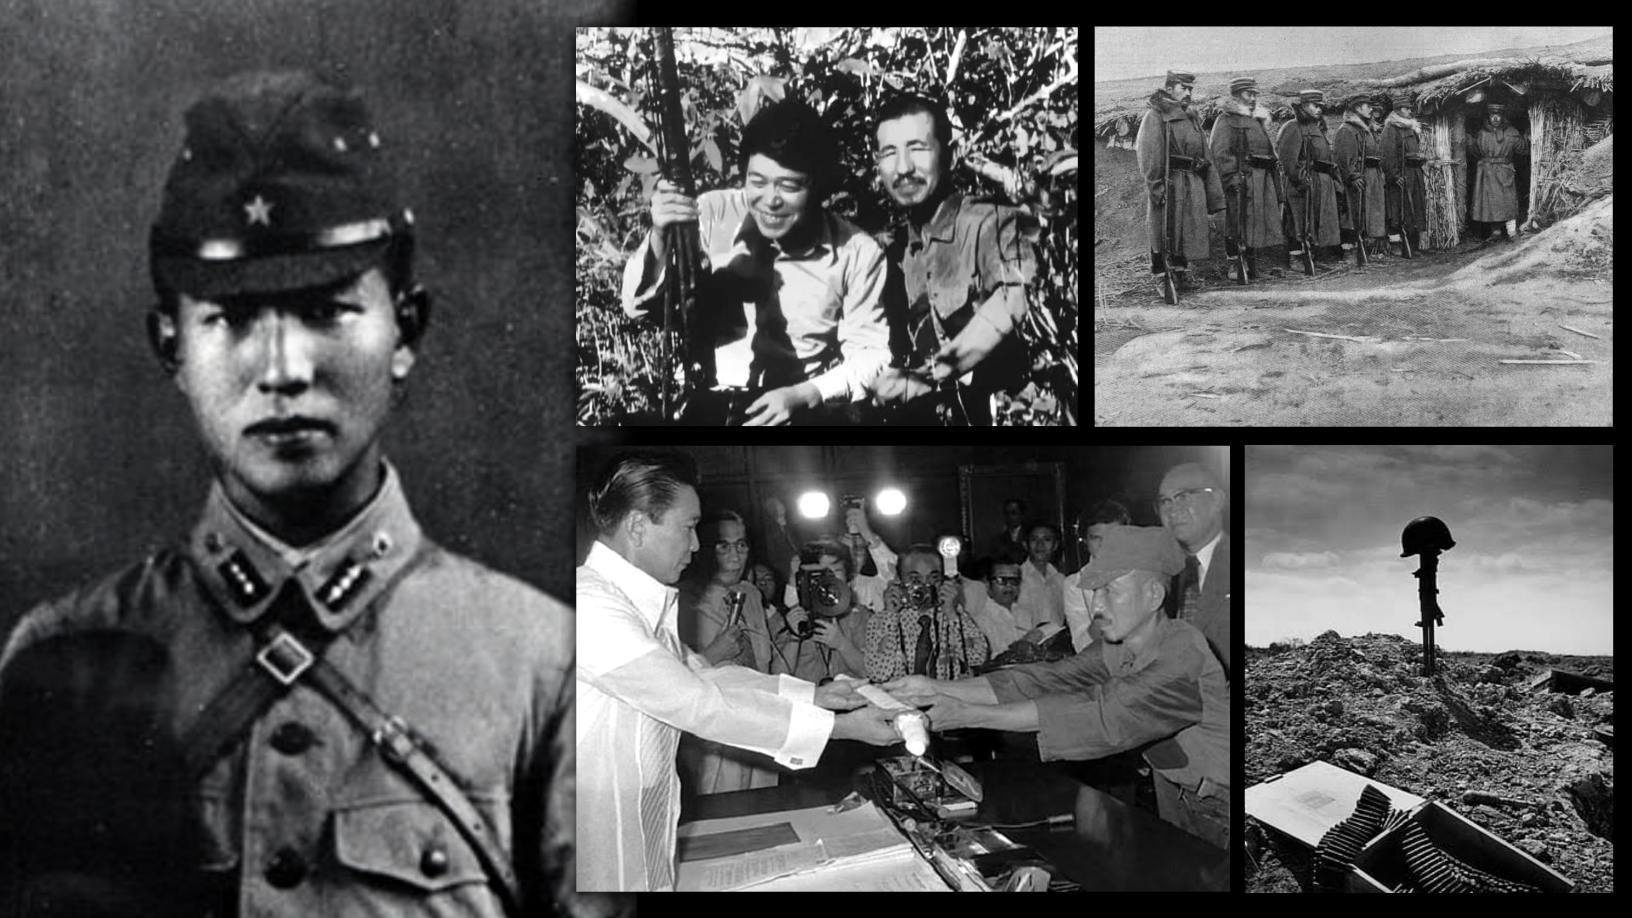 Hiroo Onoda: Japonský voják pokračoval v boji ve druhé světové válce, aniž by věděl, že vše skončilo před 29 lety 1